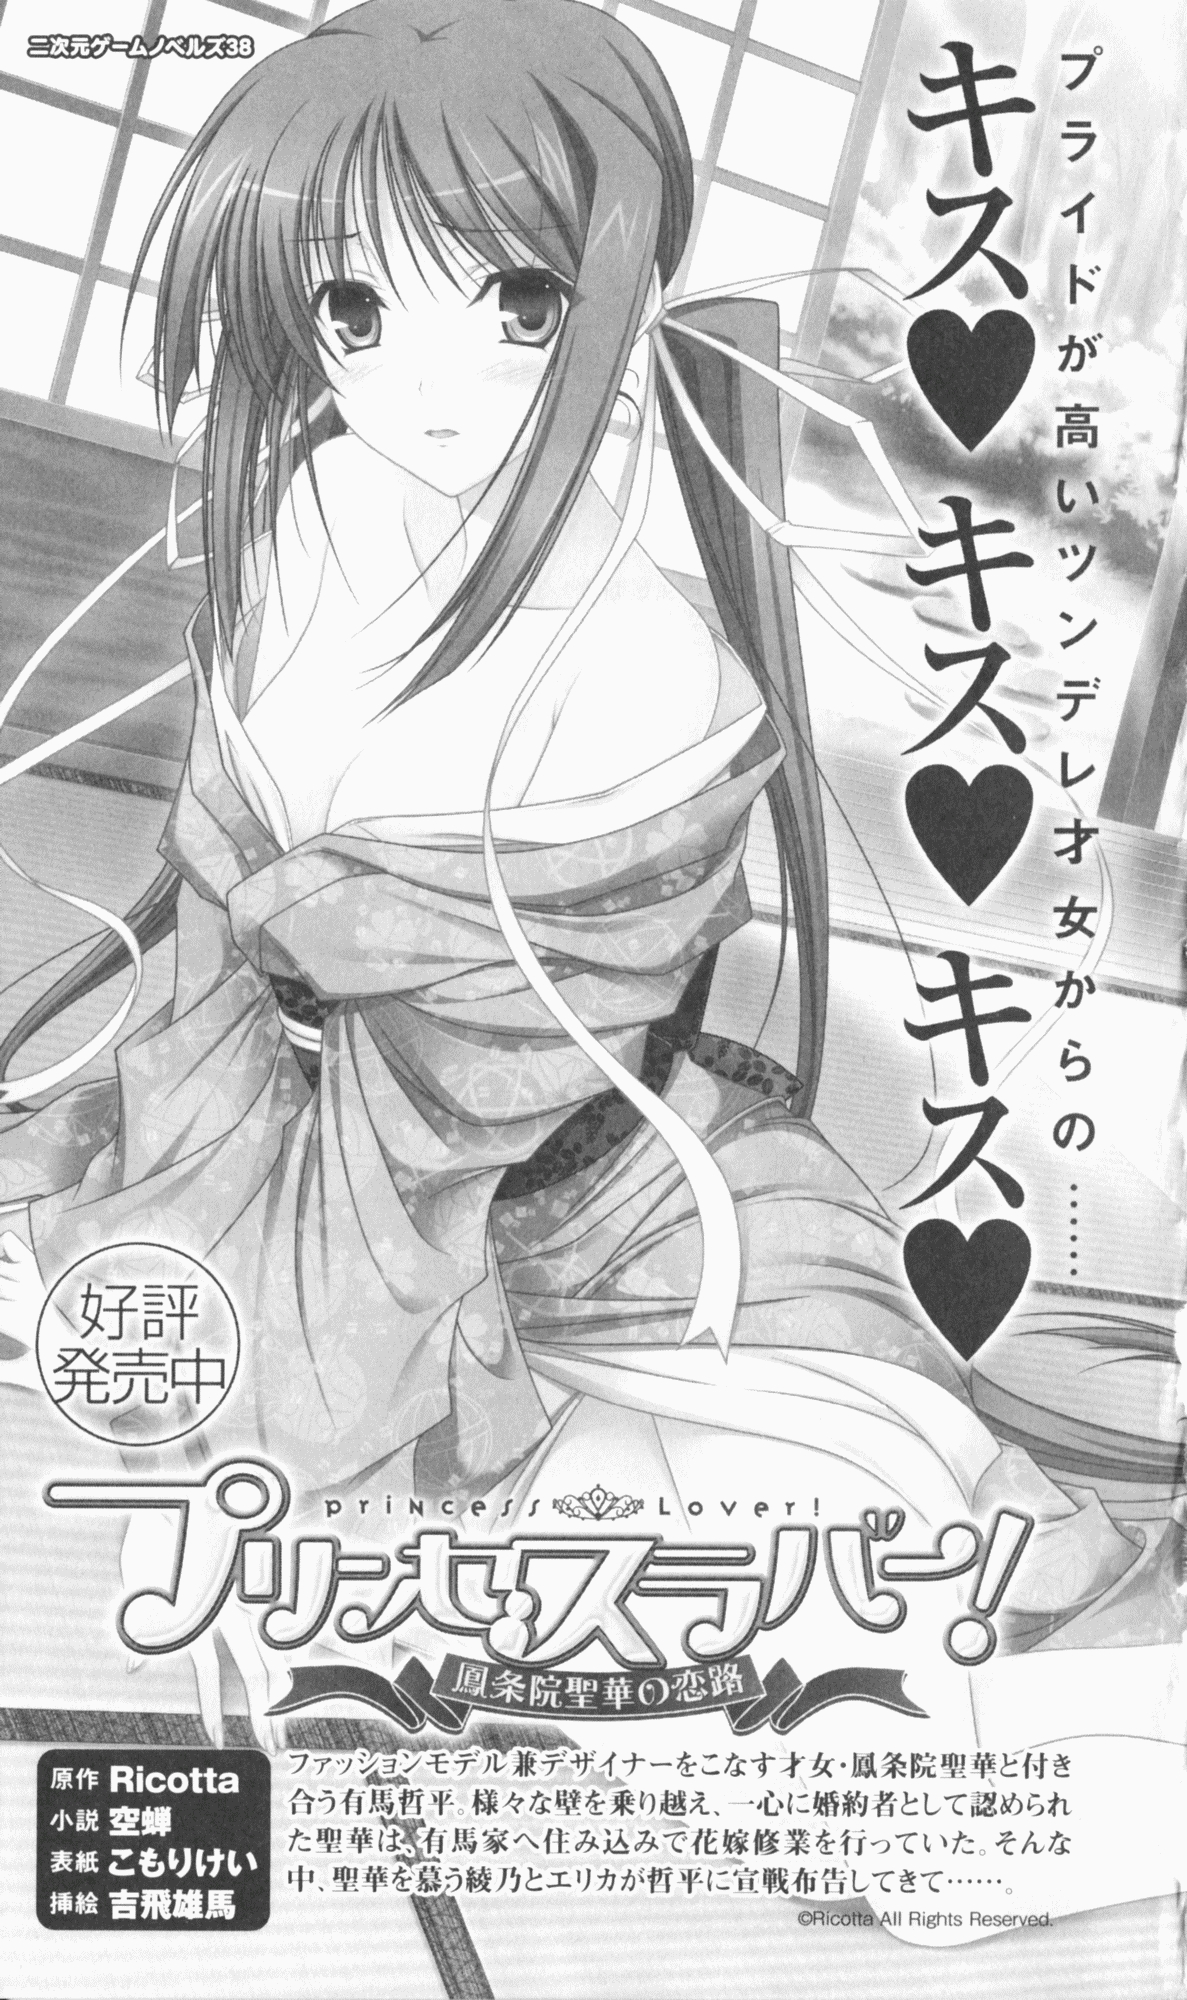 [Utsusemi × Yoshi Hyuma, Komori Kei] Princess Lover! Sylvia van Hossen no Koiji 2 (Original by Ricotta) 280